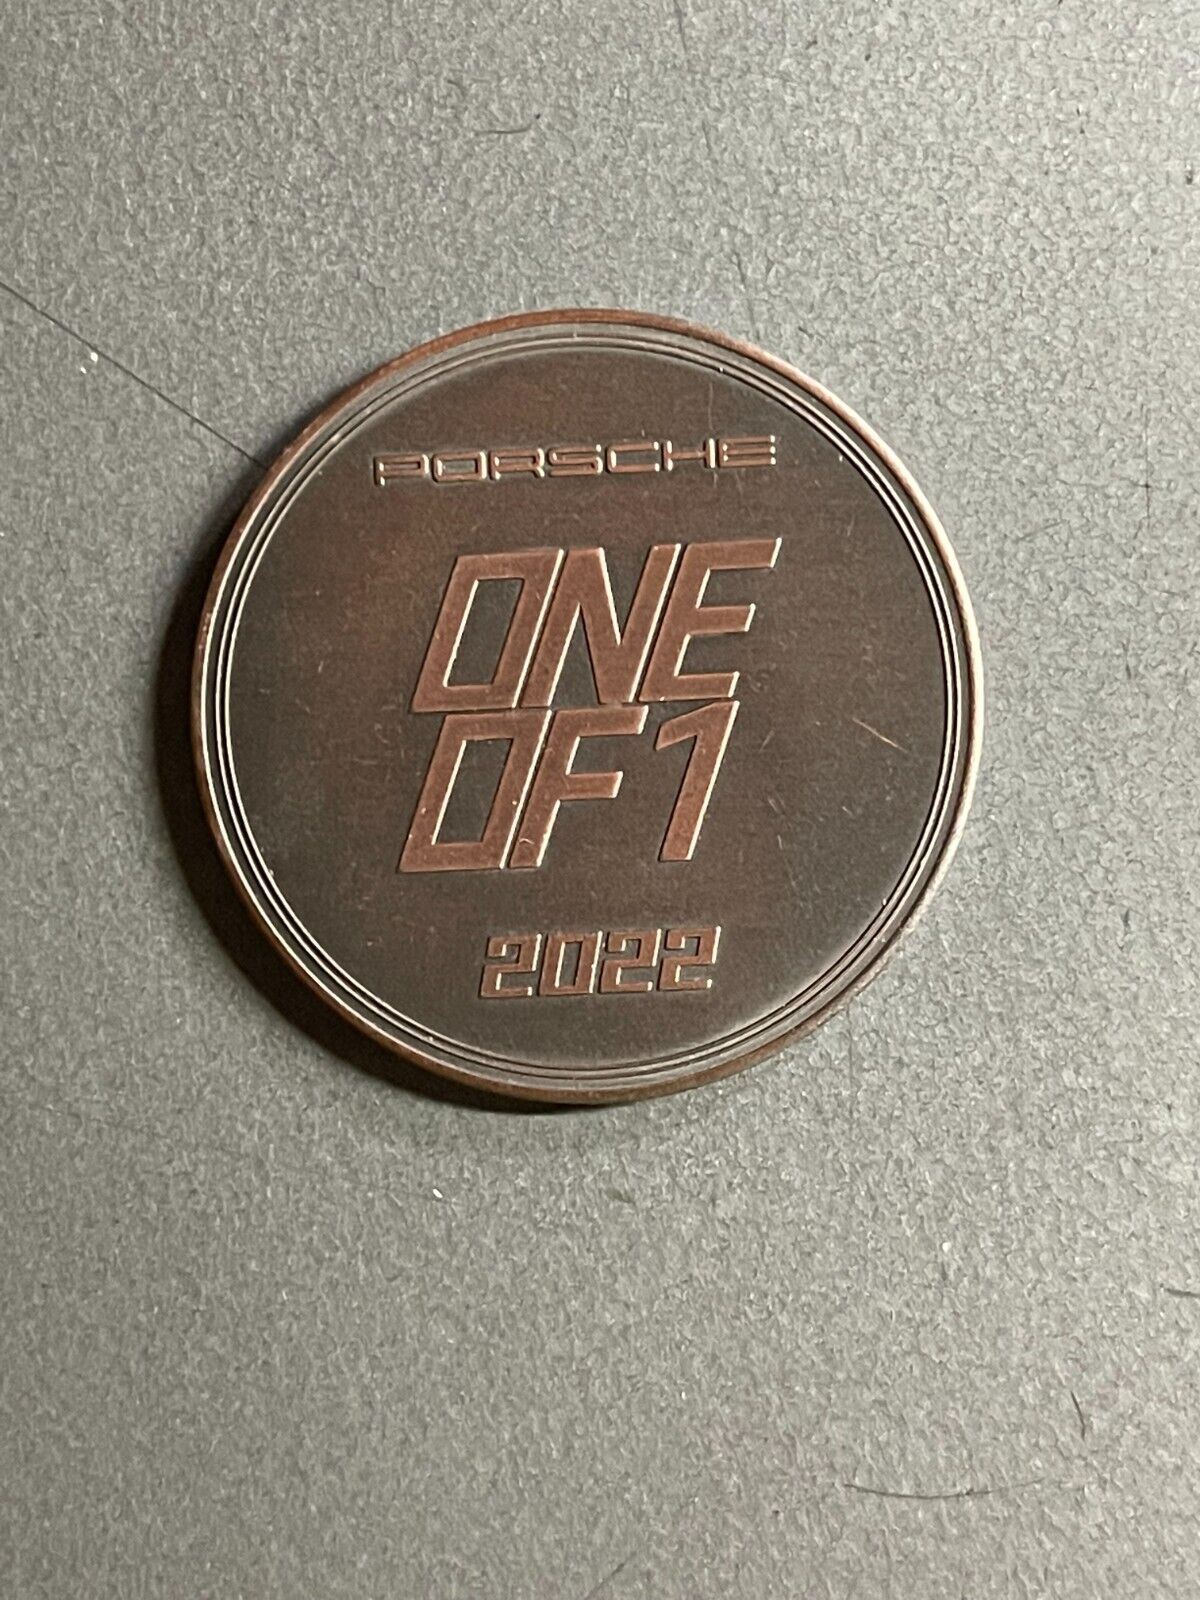 2022 Porsche Christophorus Calendar Coin Münze - RARE Awesome L@@K